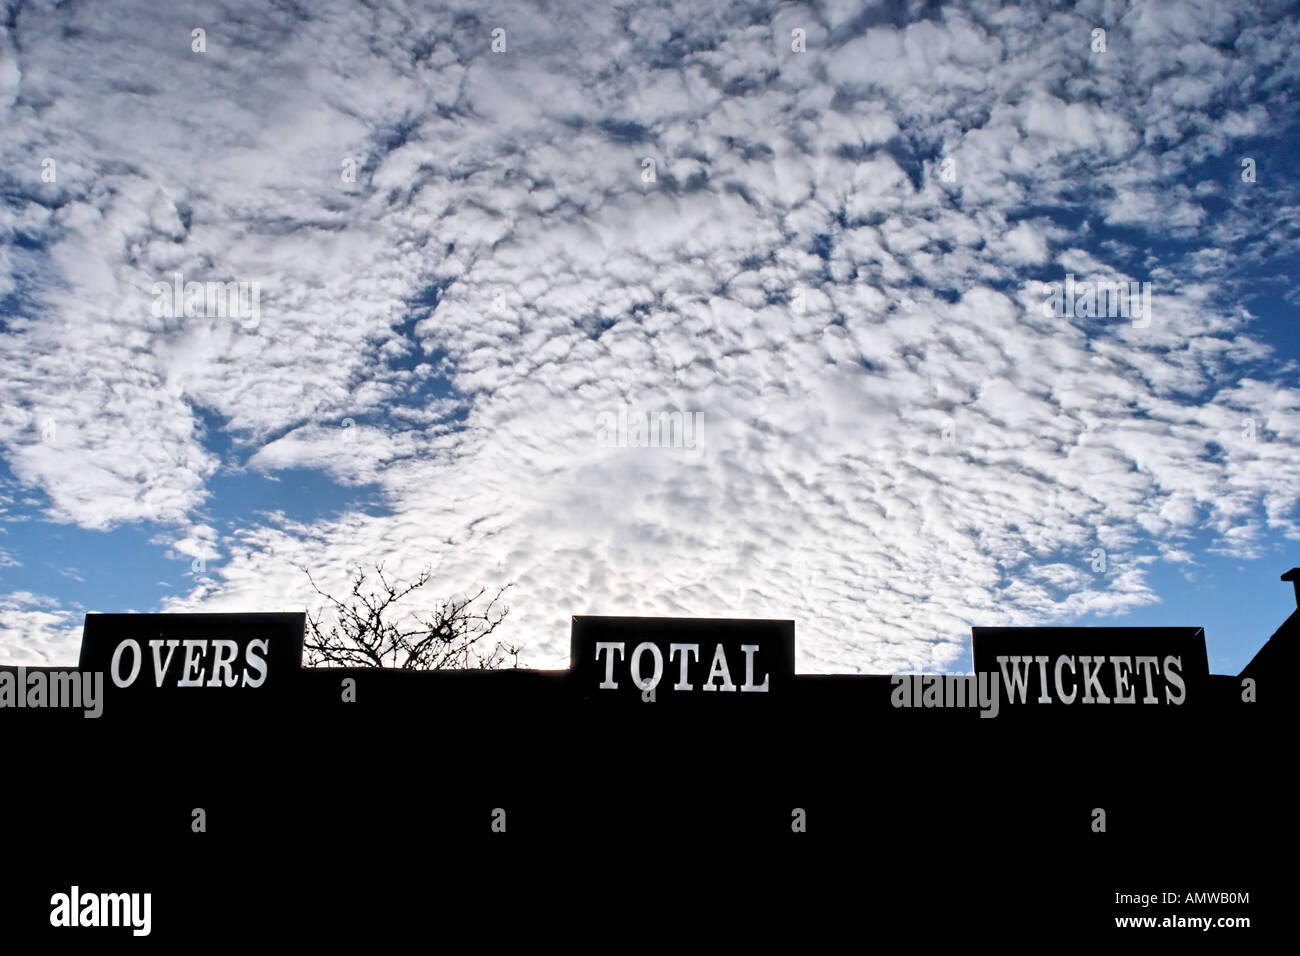 Plus de guichets total Score Cricket board - tableau de Cricket en début de soirée avec de puissants nuages Banque D'Images